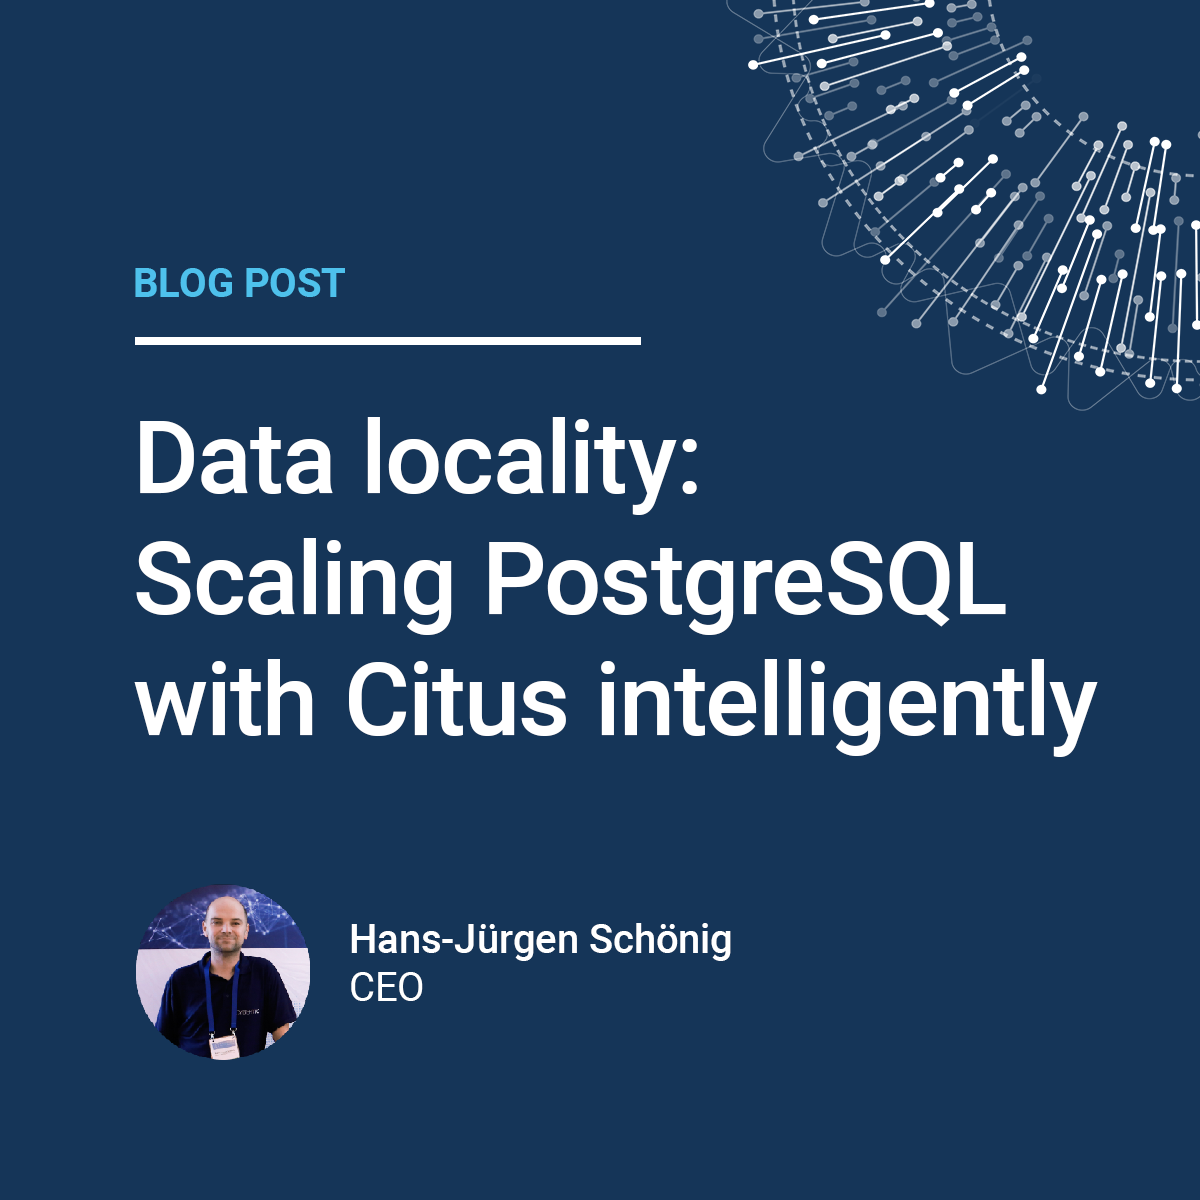 Hans-Juergen Schoenig: Data locality: Scaling PostgreSQL with Citus intelligently